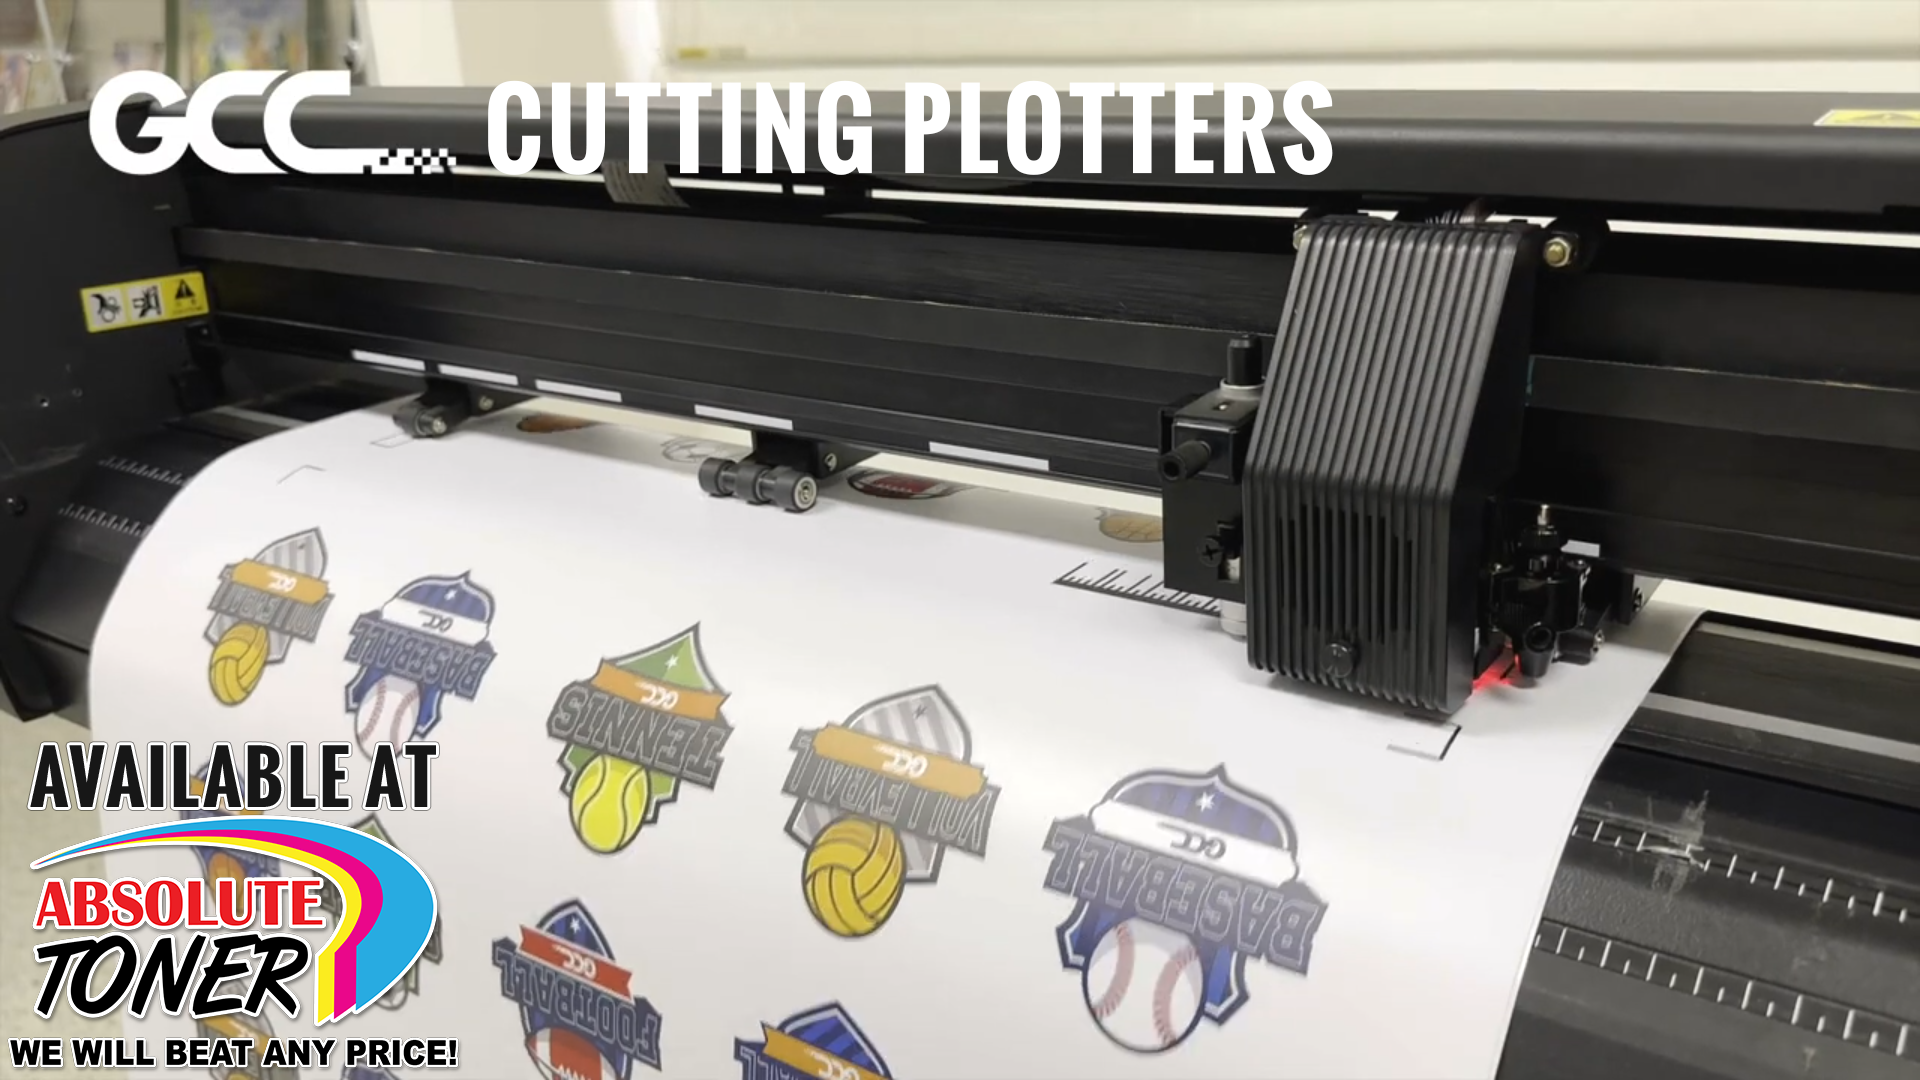 GCC RX II Series Cutting Plotters